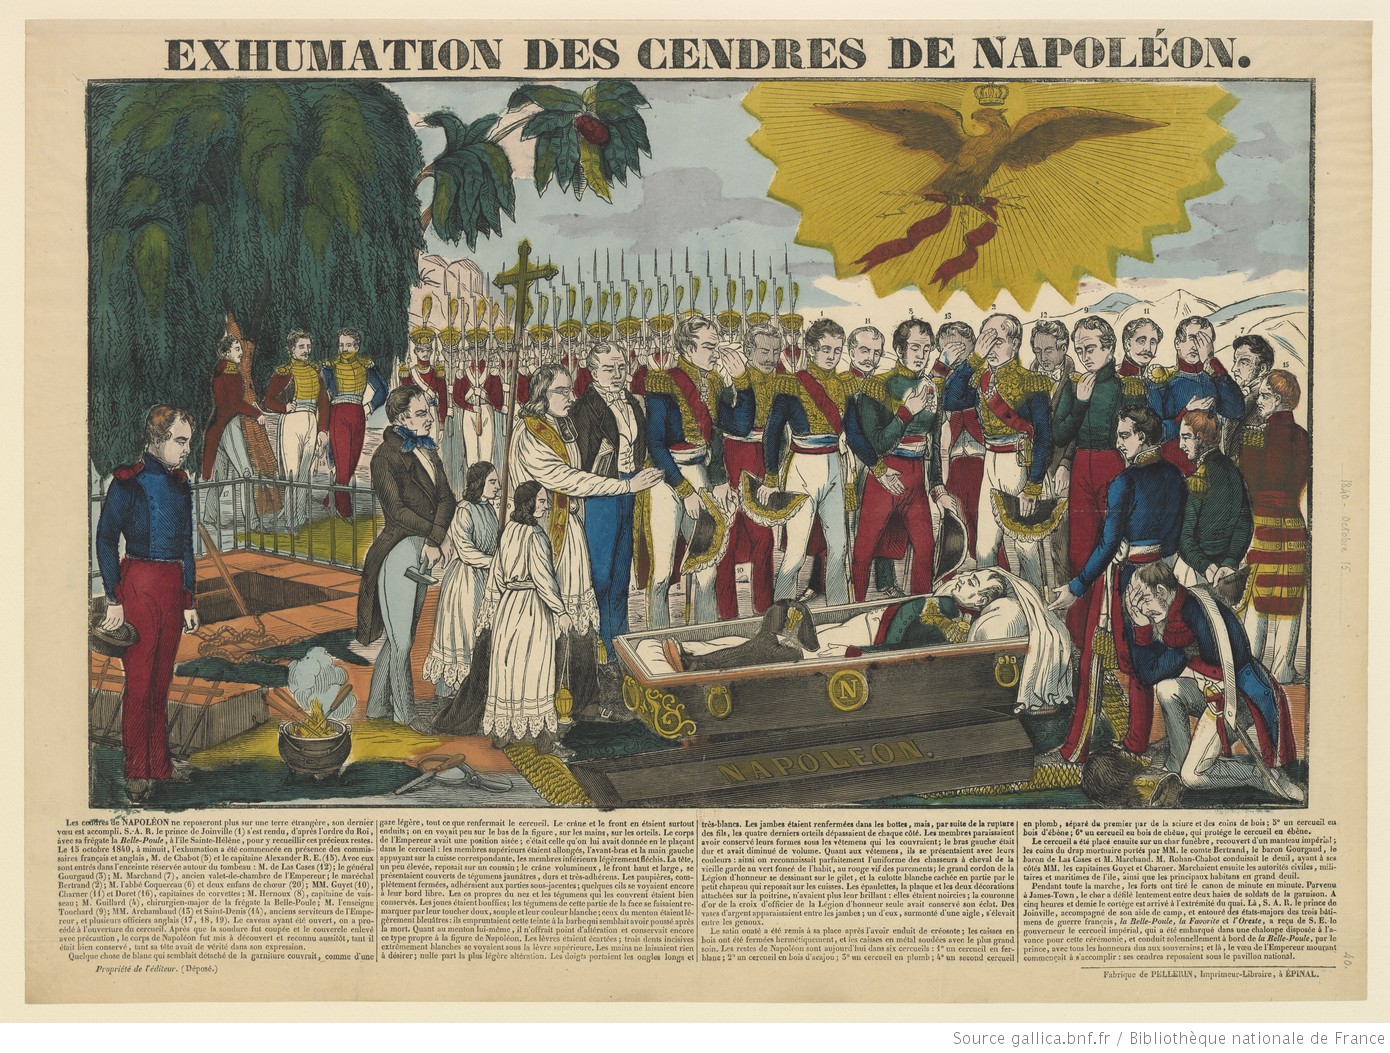 12 MAGGIO 1840: DISEGNO DI LEGGE PER RIMPATRIARE LE CENERI DELL'IMPERATORE